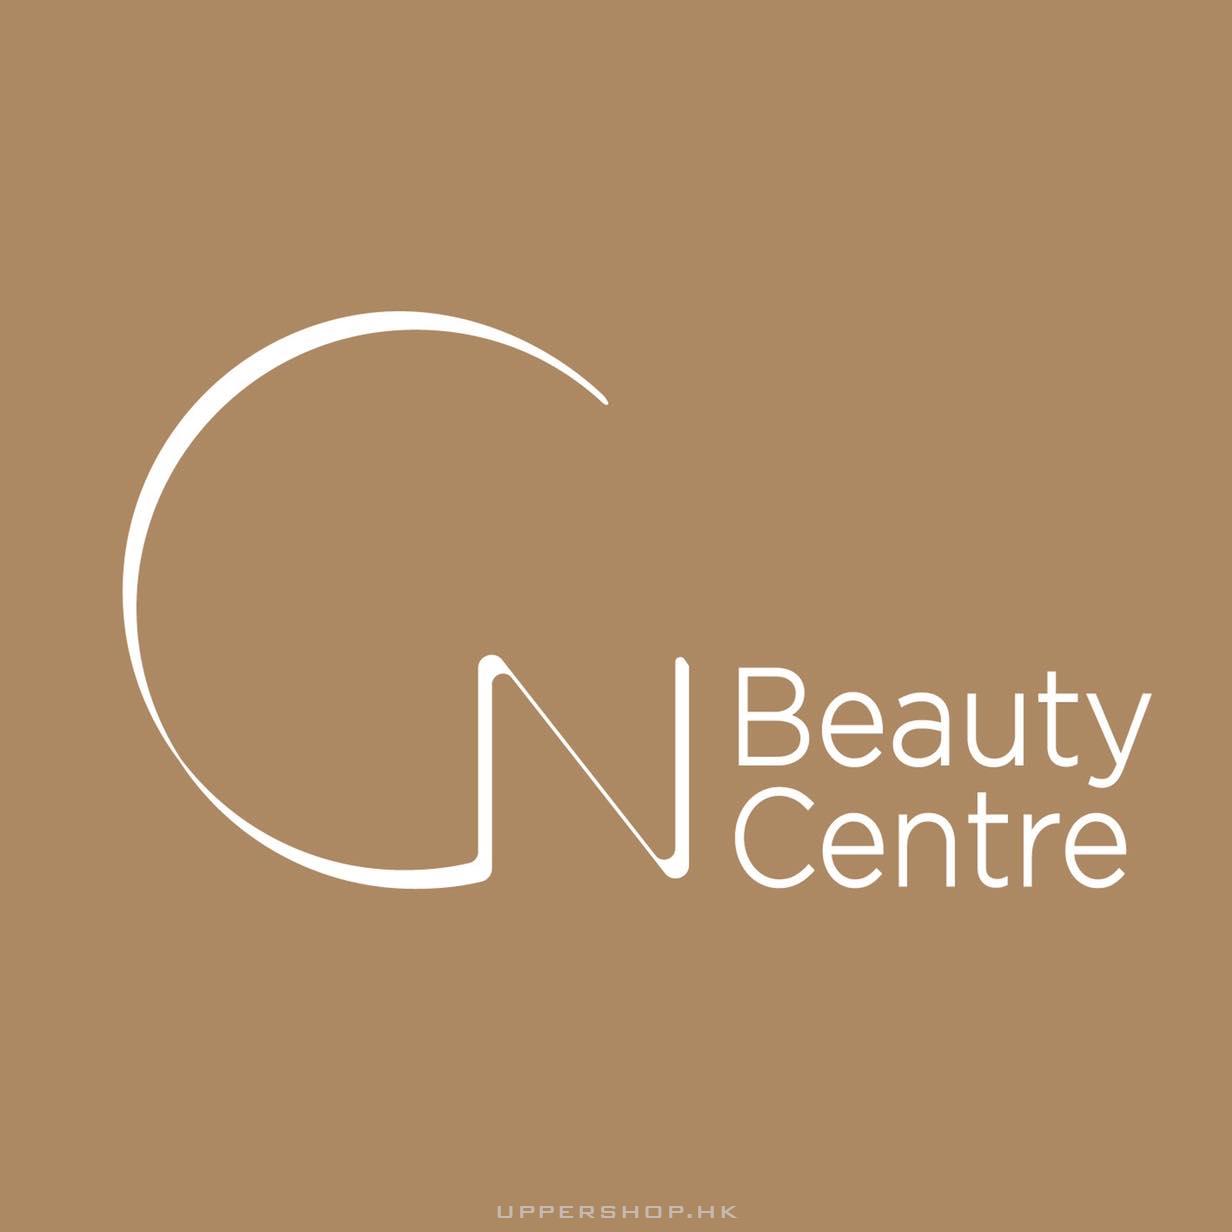 C N Beauty Centre